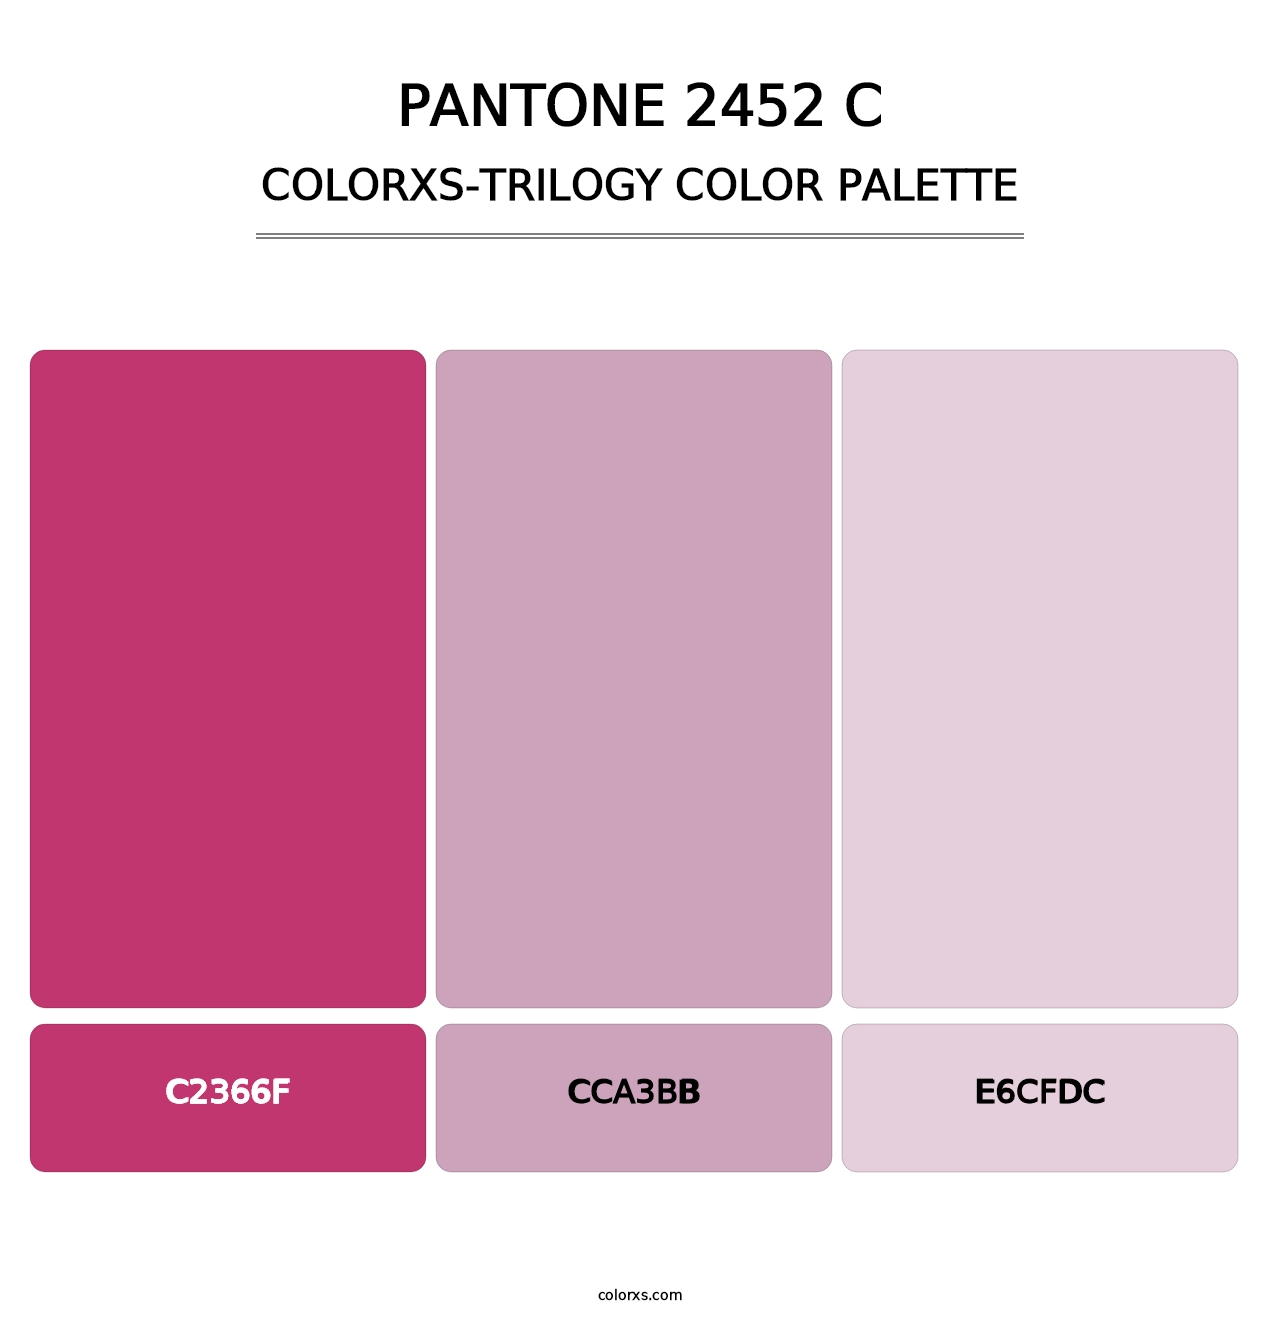 PANTONE 2452 C - Colorxs Trilogy Palette